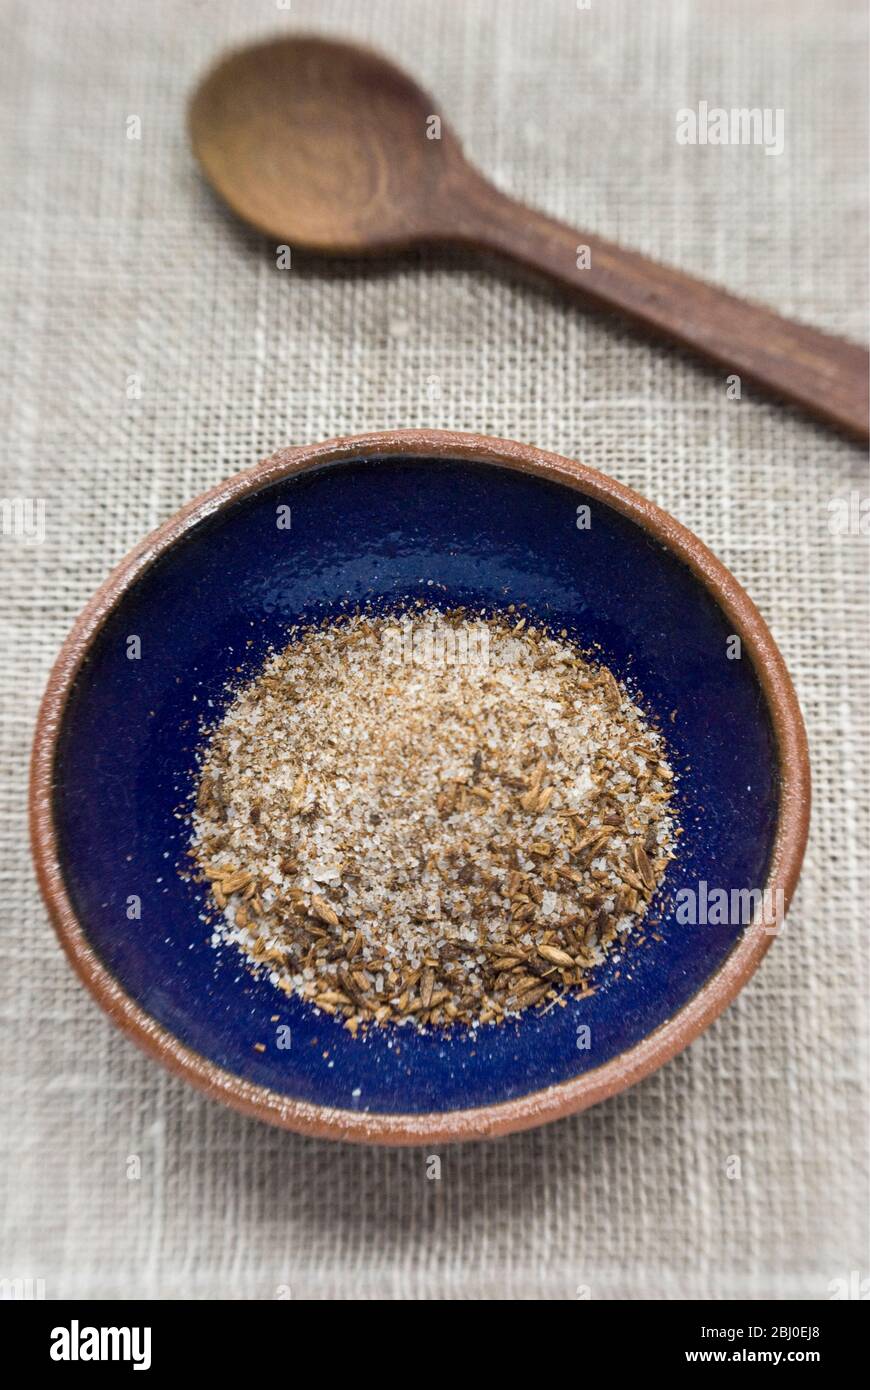 Una miscela di sale marino e semi di cumino tostati e schiacciati, un condimento popolare per il cibo Morrocano. - Foto Stock